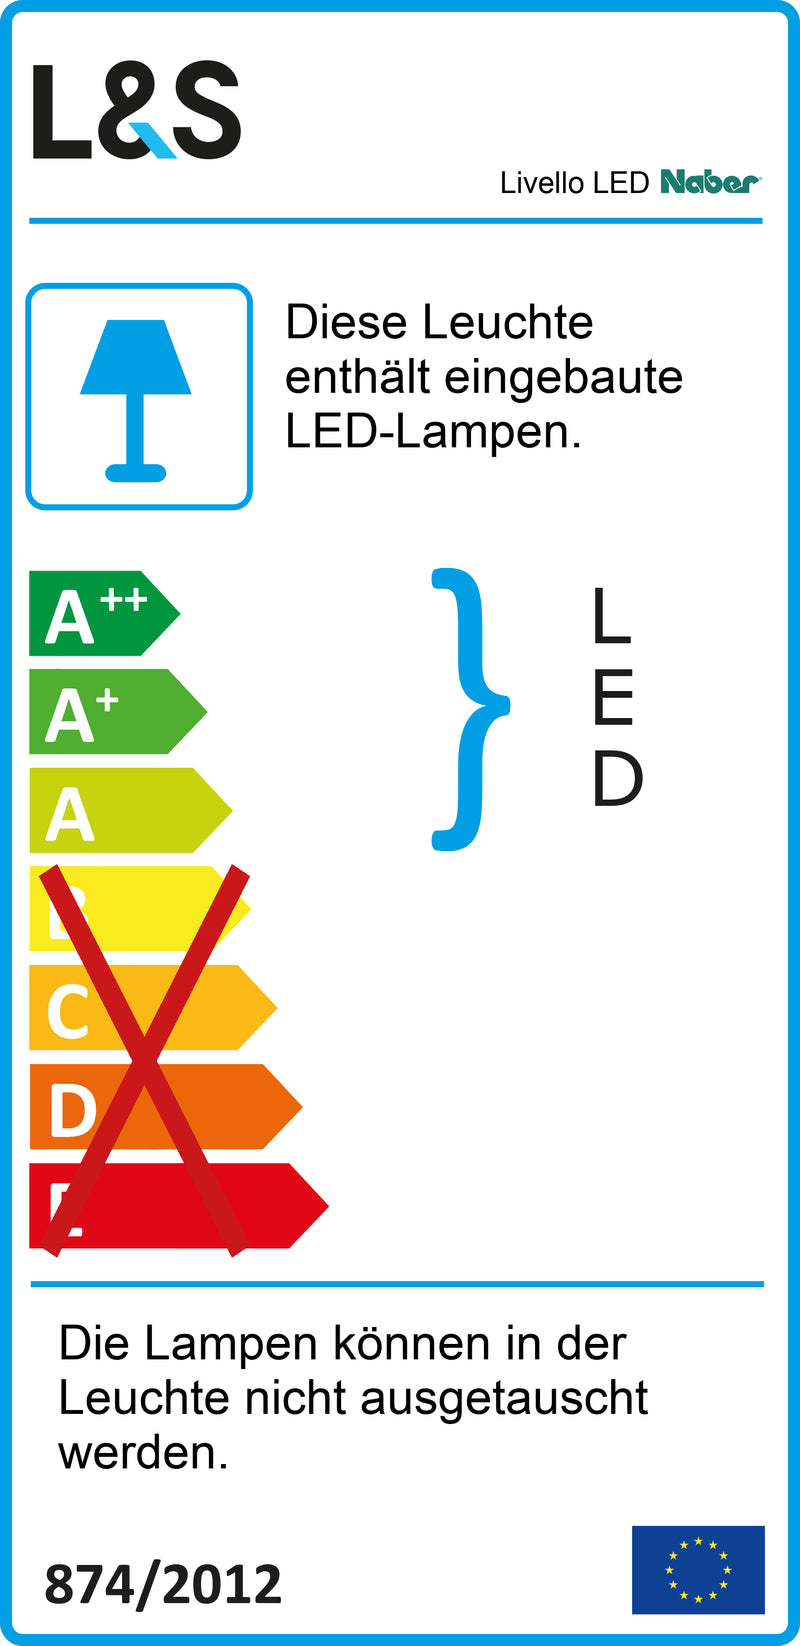 E-Label zu Zeichnung zu Livello LED als Variante Set-5, alufarbig von Naber GmbH in der Kategorie Lichttechnik in Österreich auf conceptshop.at